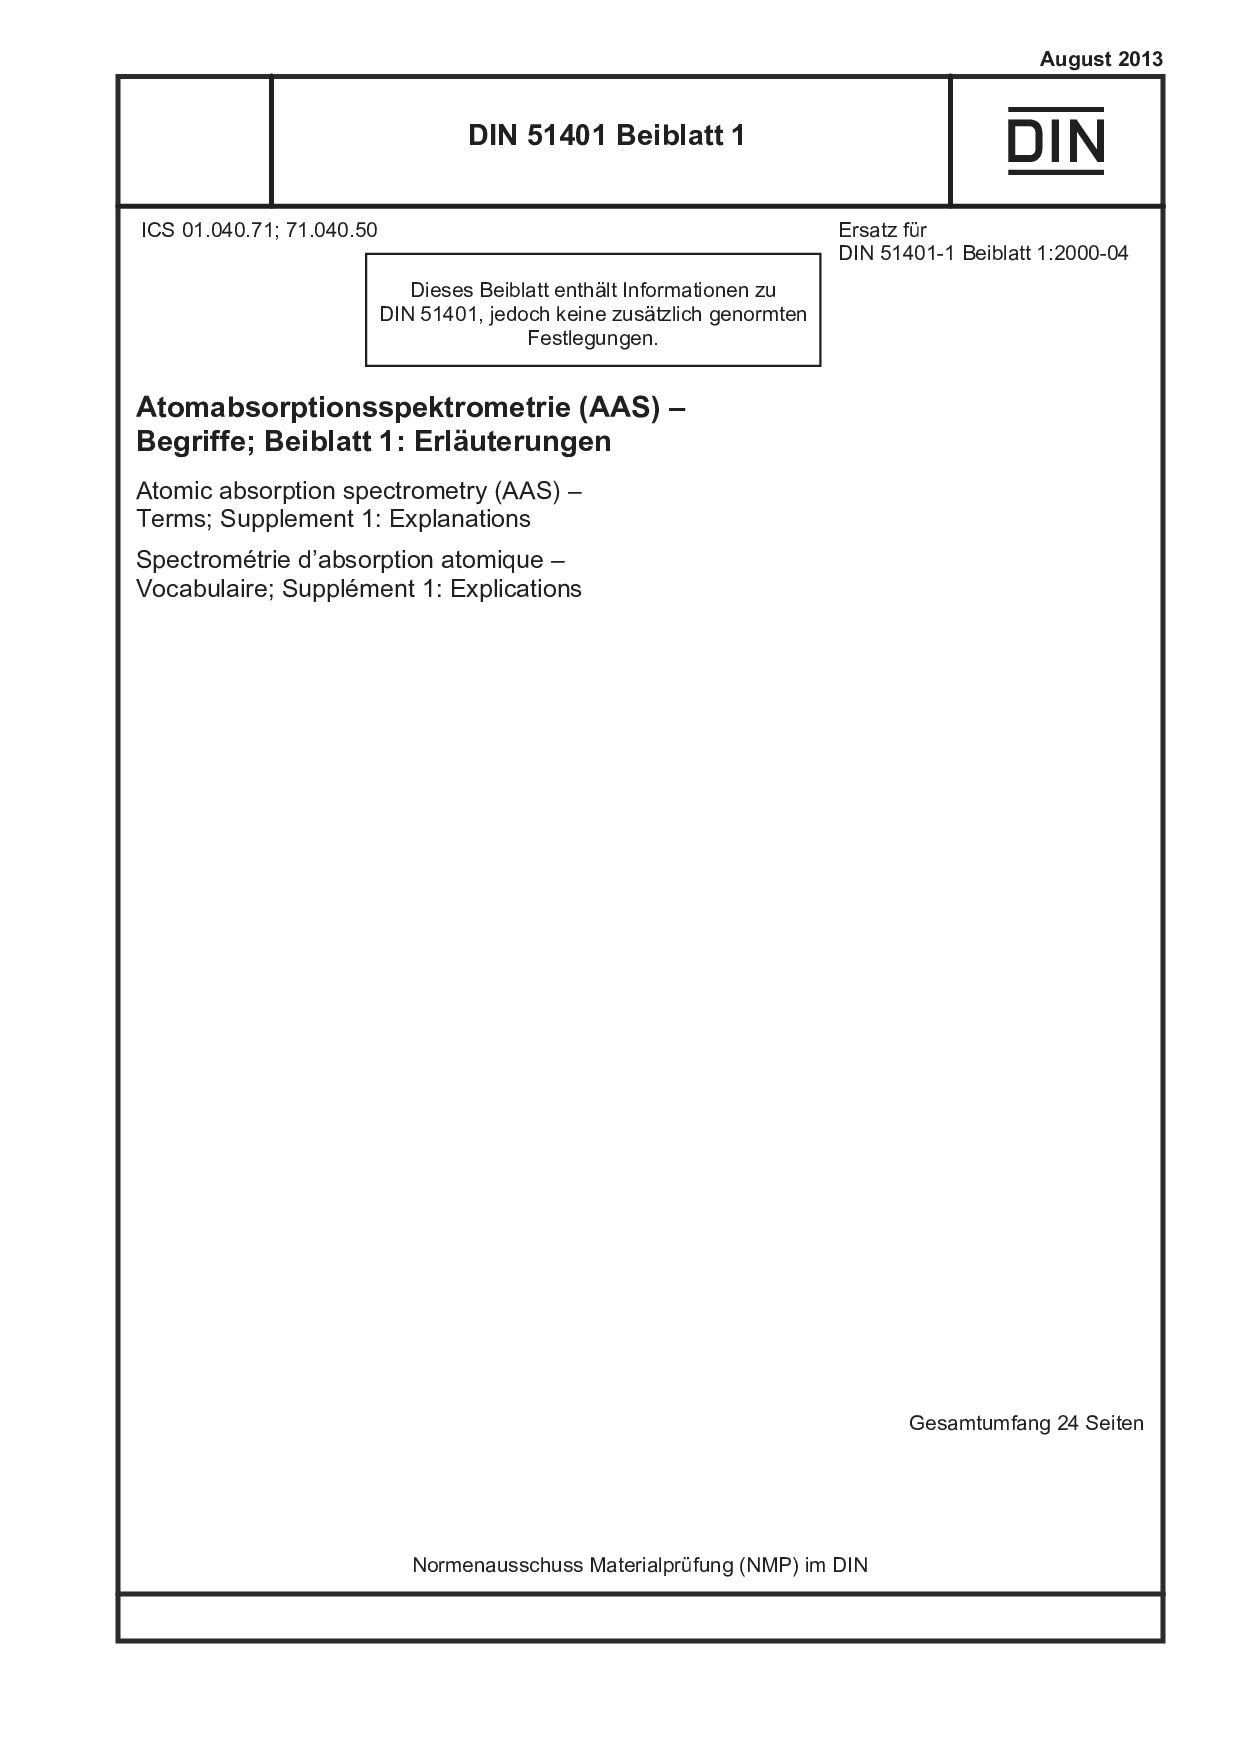 DIN 51401 Beiblatt 1:2013-08封面图